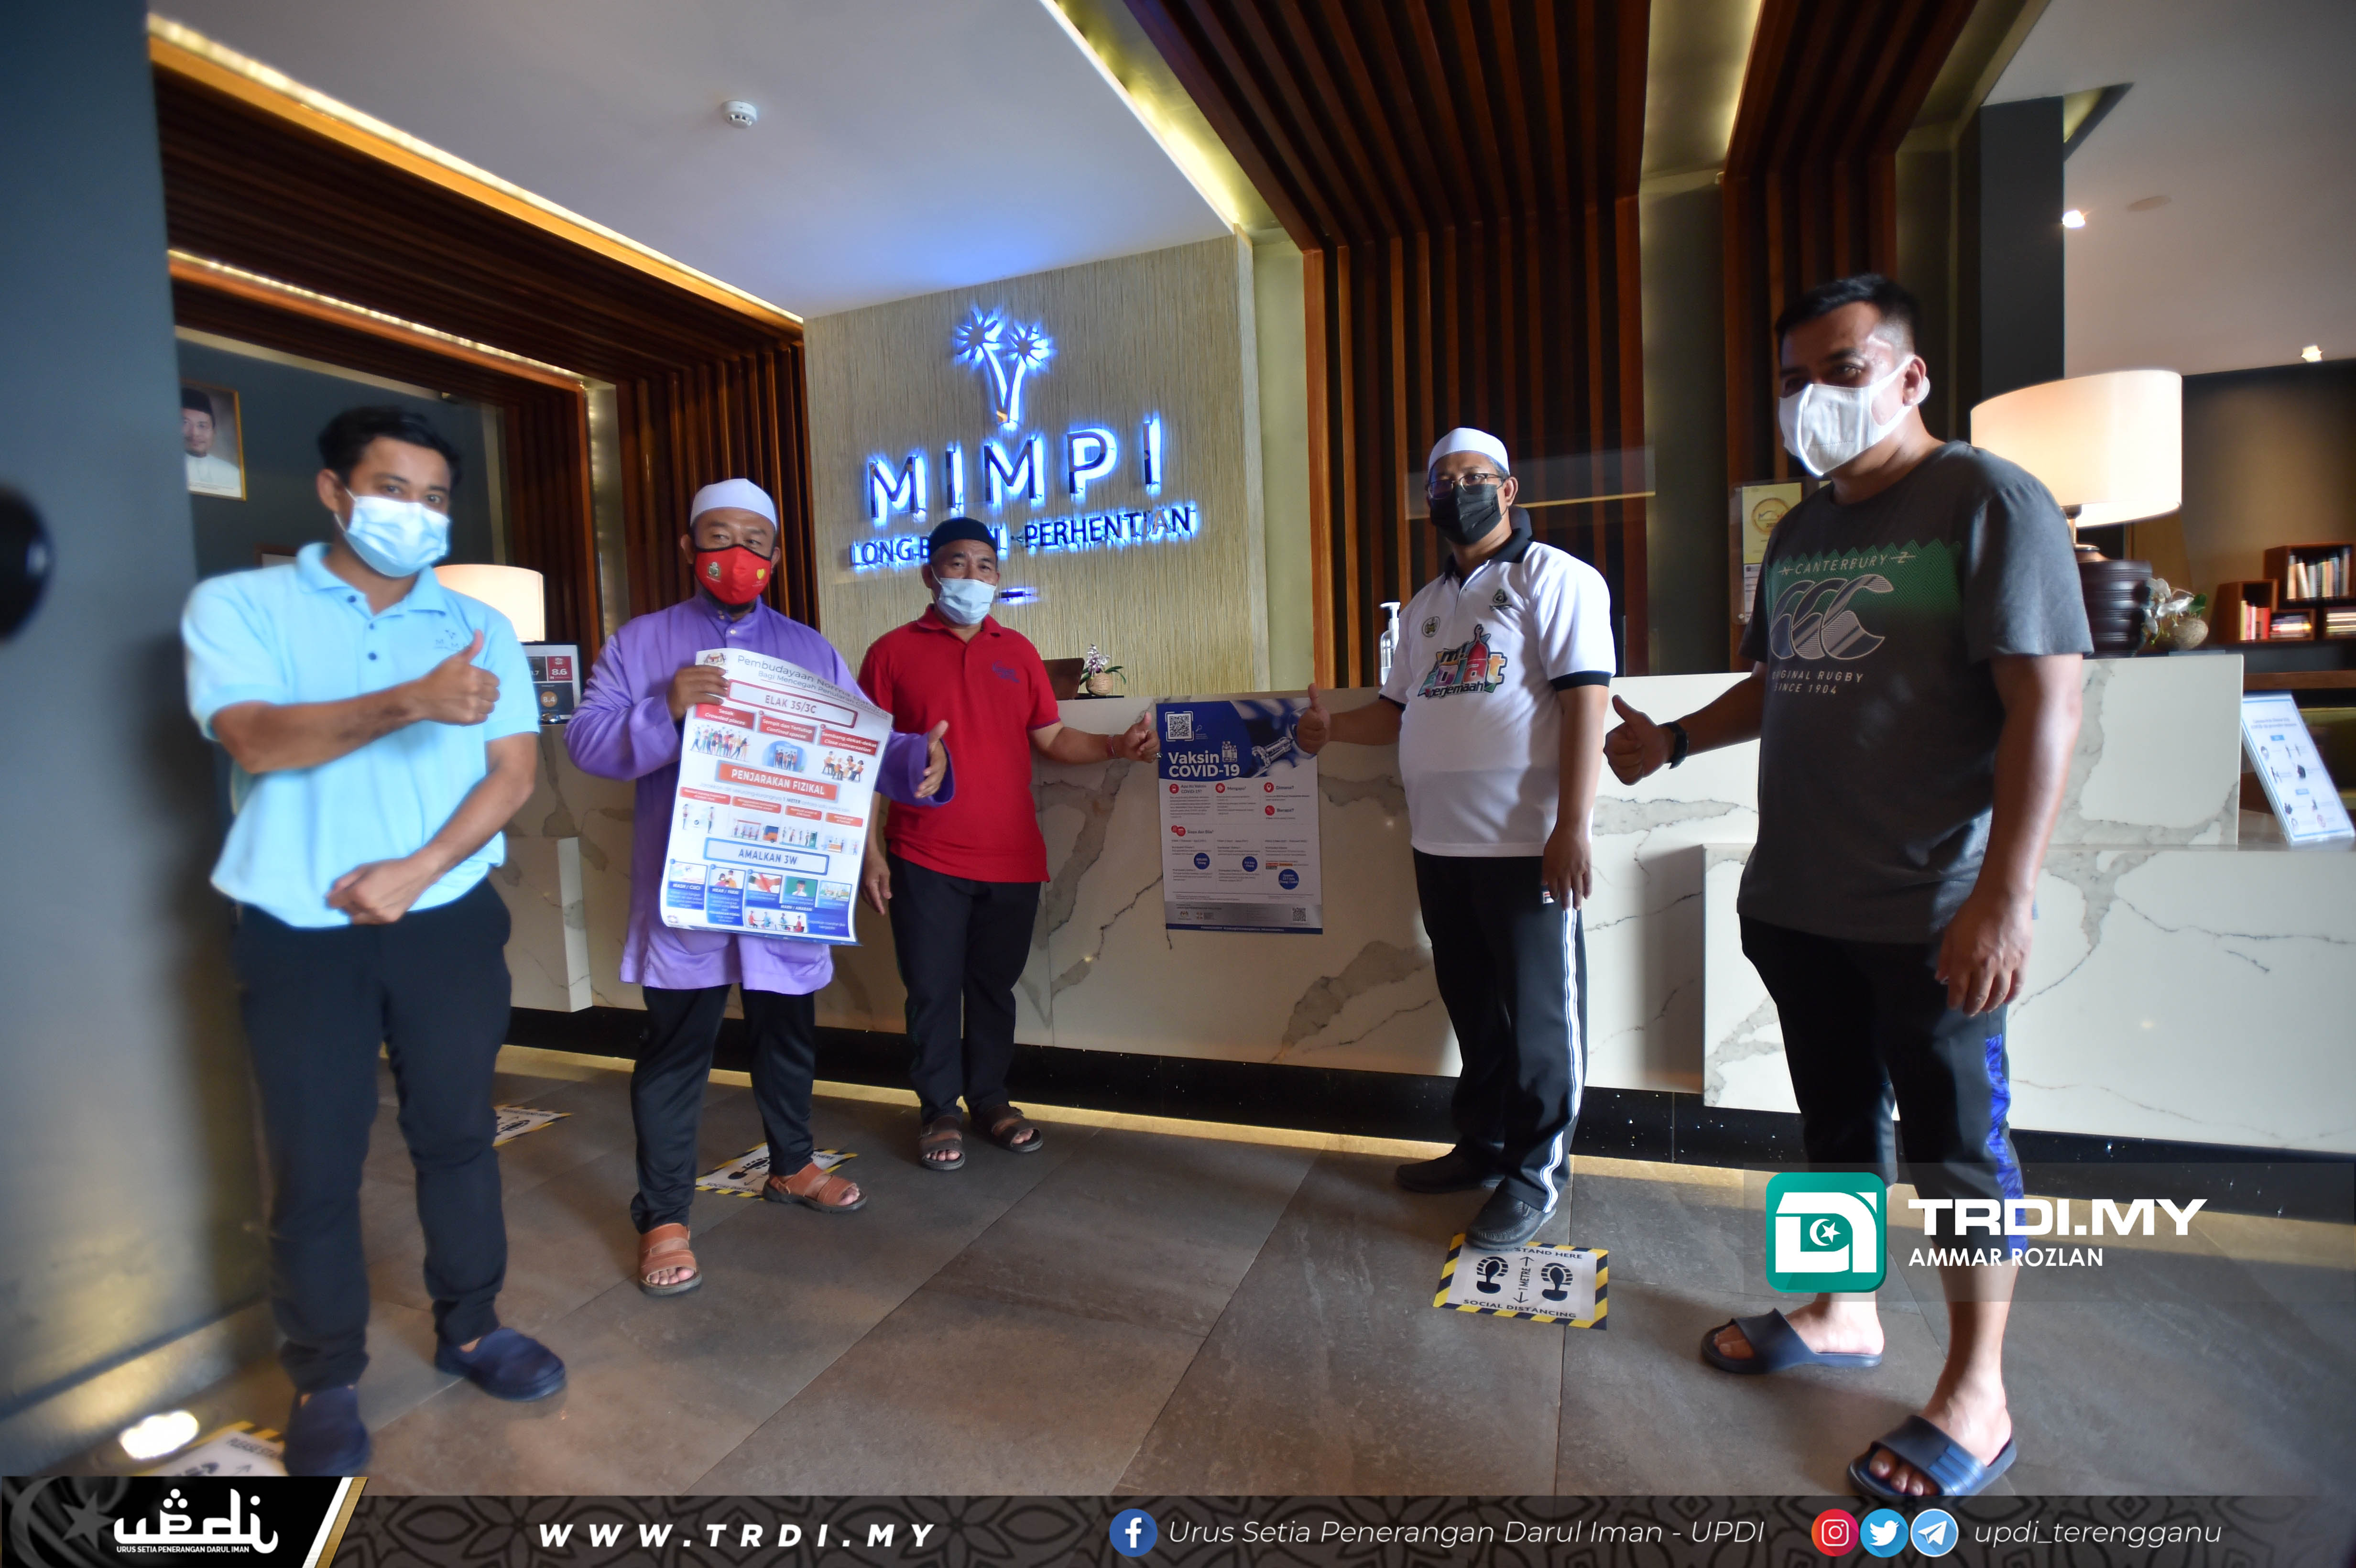 Program yang dirasmikan oleh Pengerusi Jawatankuasa Pembangunan Insan, Dakwah dan Penerangan Negeri Terengganu, YB Ustaz Mohd Nor Hamzah dipenuhi dengan pelbagai pengisian mendekati rakyat seperti perkhidmatan pendaftaran vaksin Covid-19, pemeriksaan kesihatan, pendaftaran mengundi Suruhanjaya Pilihan Raya, membuat kad pengenalan dan ceramah berkaitan penyalahgunaan dadah oleh Agensi Anti Dadah Kebangsaan (AADK) dan peranan Jabatan Kemajuan Masyarakat (Kemas).